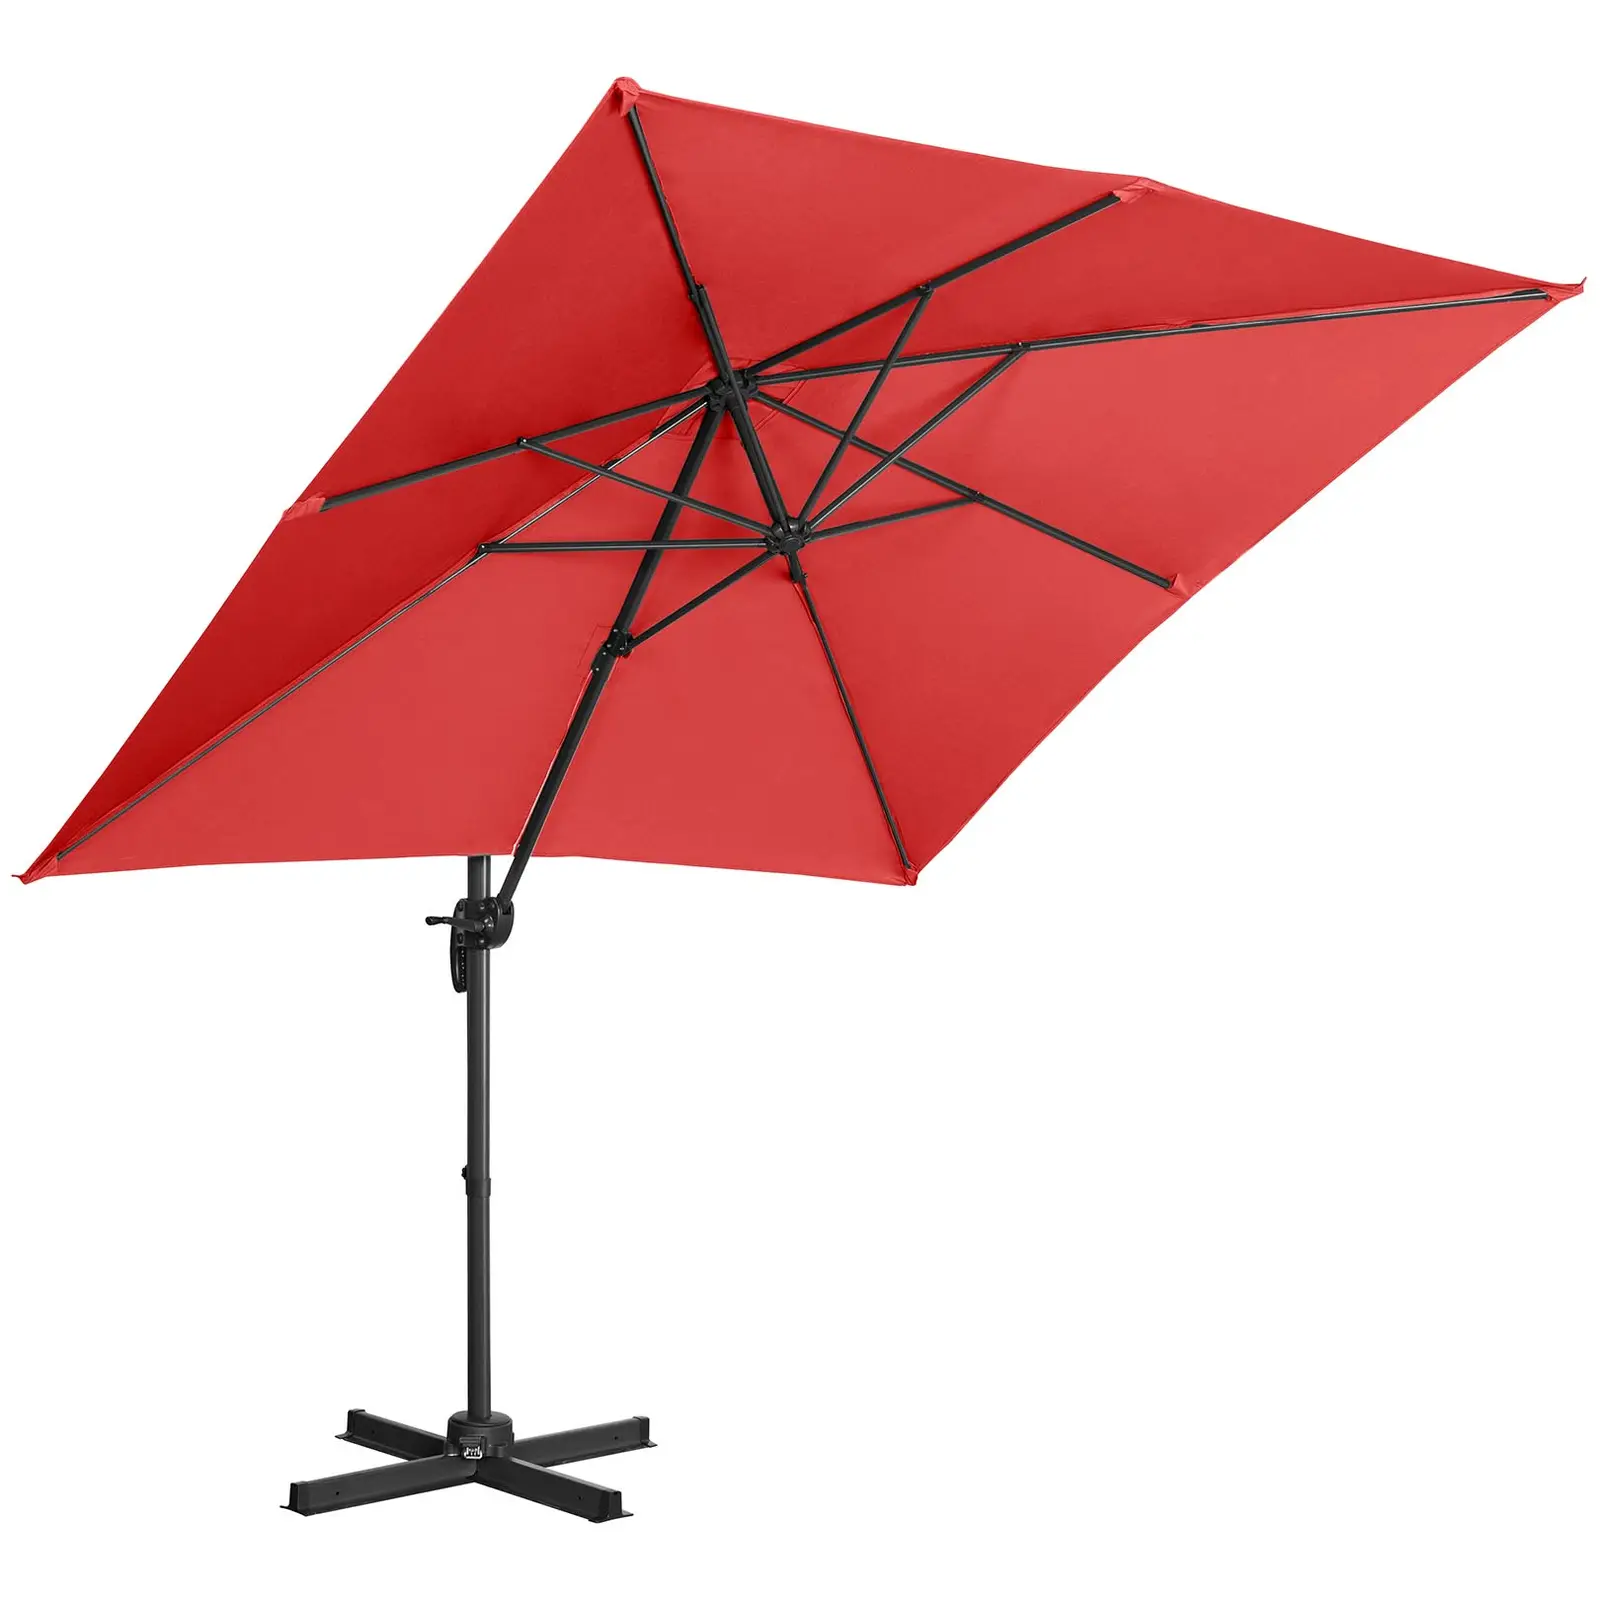 Parasol de jardin - Rouge - Carré - 250 x 250 cm - Pivotant - 3